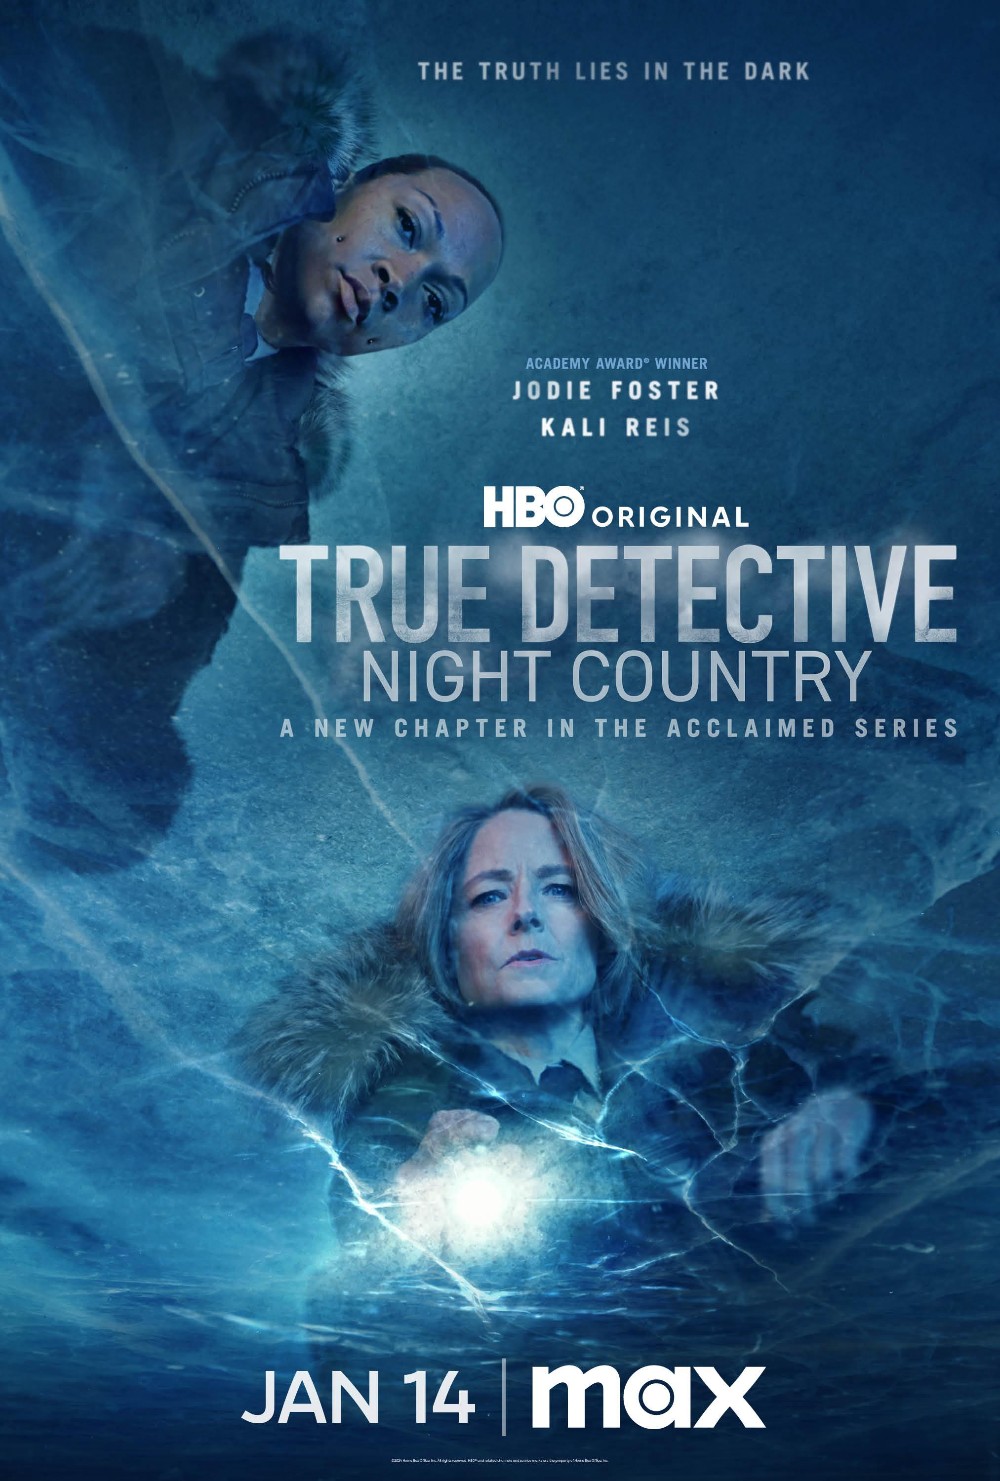 True Detective S04E02 [1080p/720p] WEB-DL (x264/x265/H264) [6 CH] A60d3aeee83436470cd13090b5eb9b4b